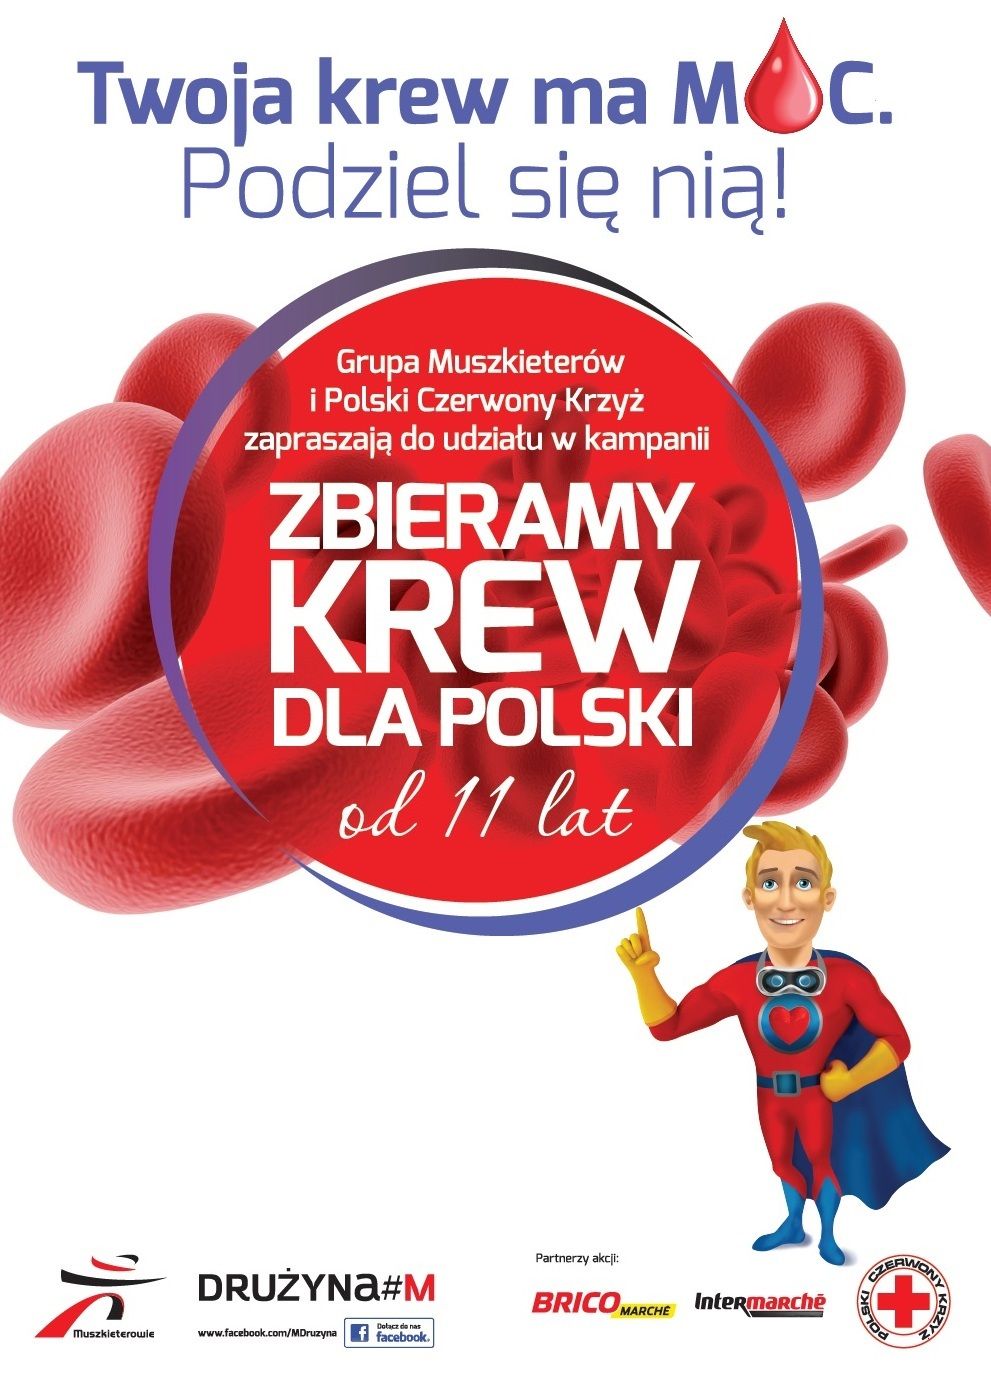 Zbierają krew dla Polski